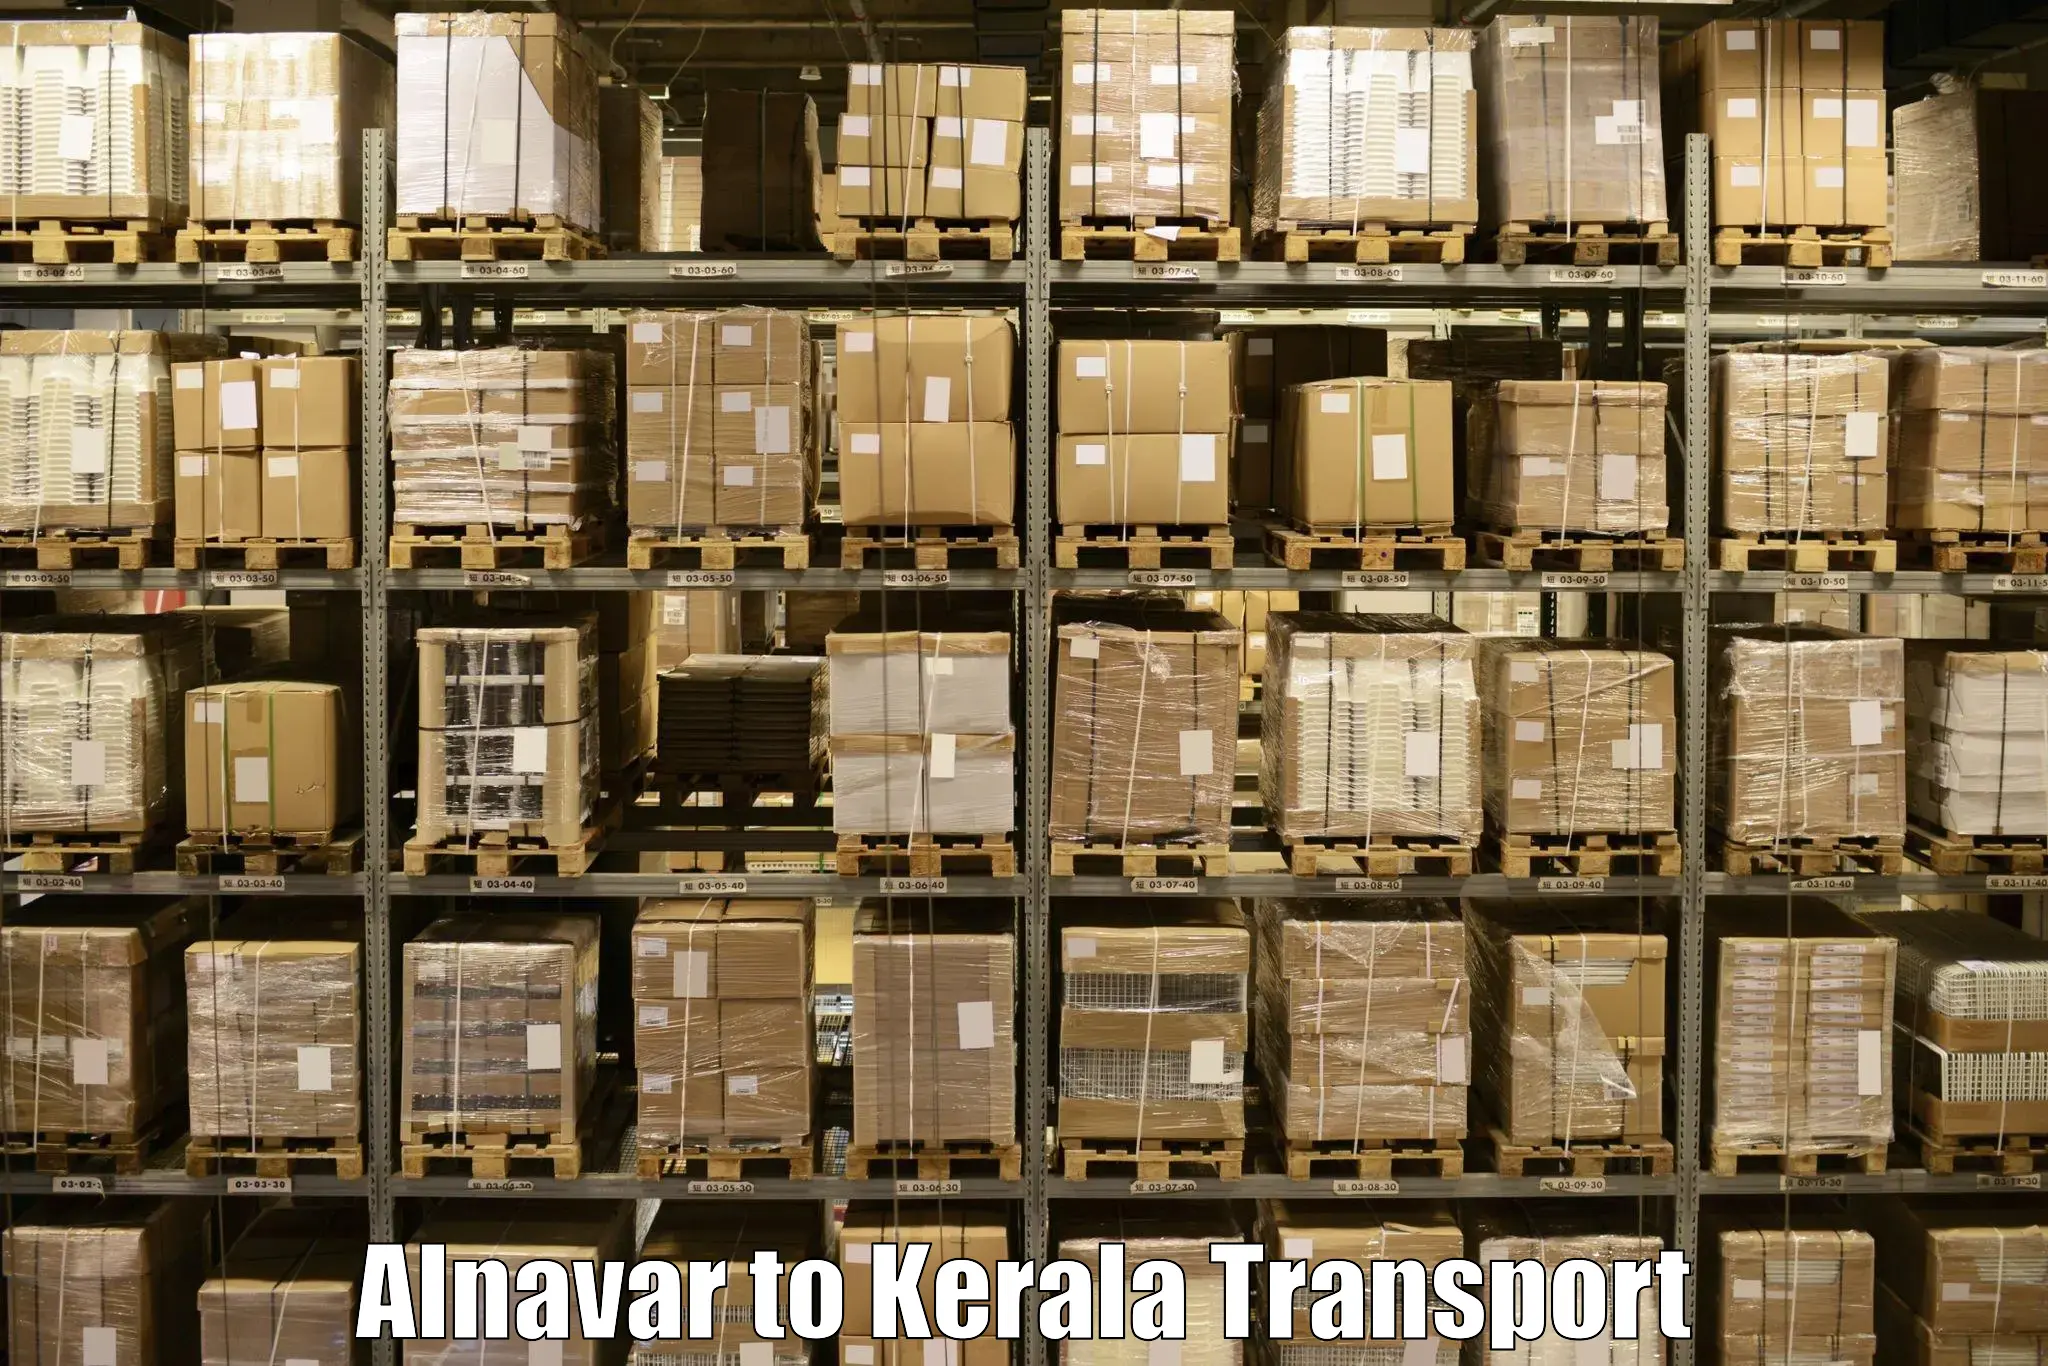 Nearby transport service Alnavar to Kasaragod